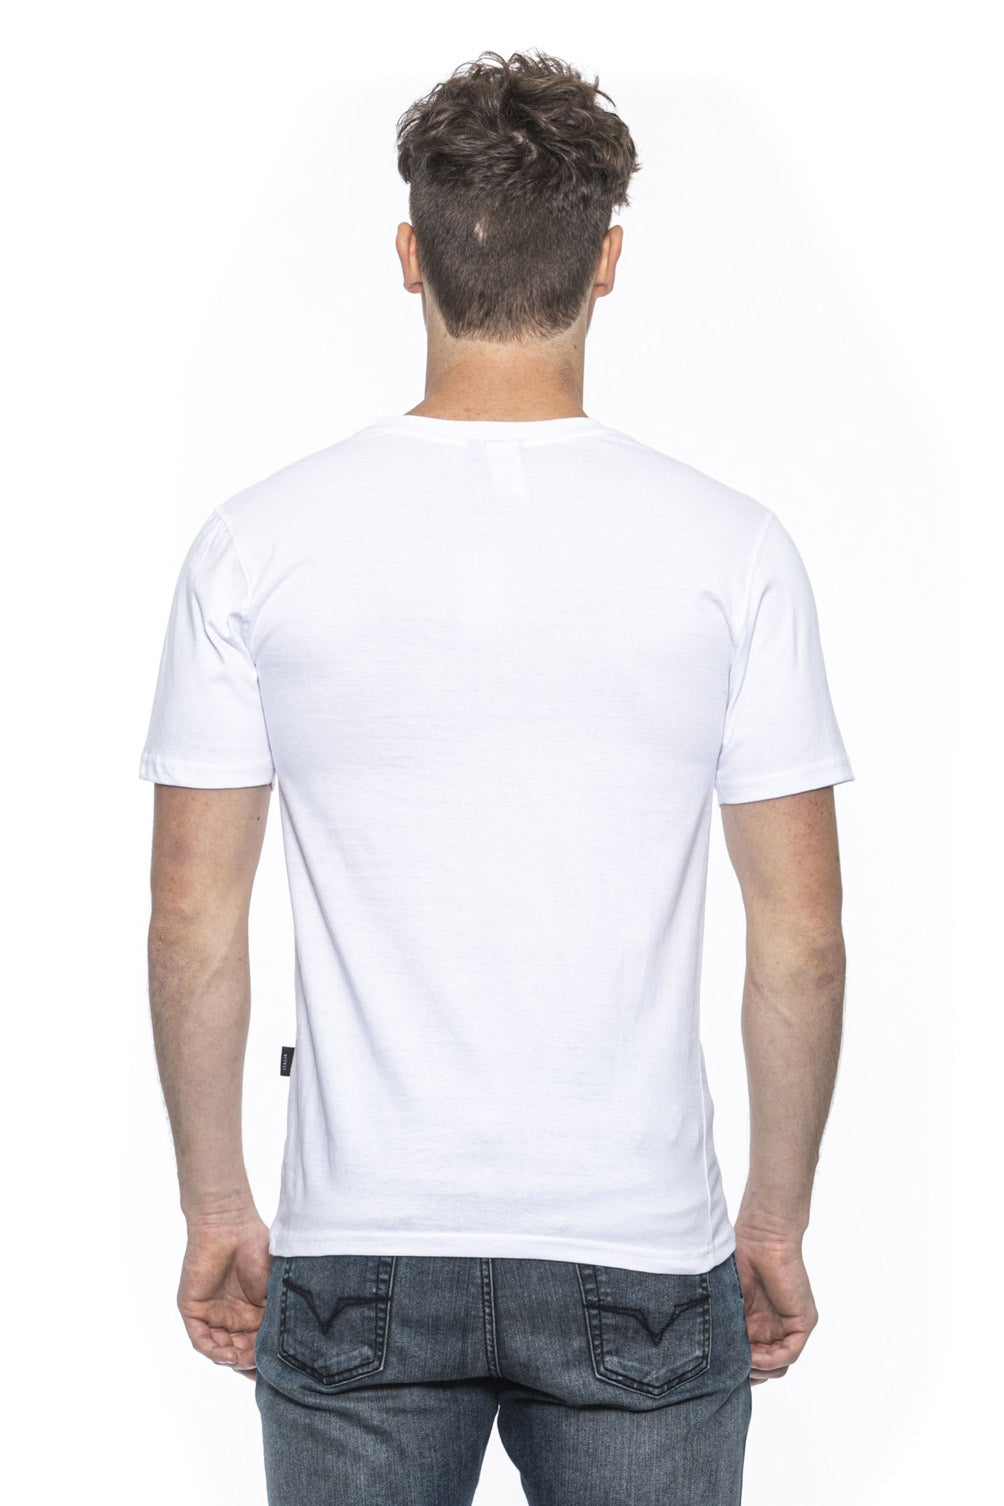 19V69 Italia Mens T-Shirt White TROY WHITE